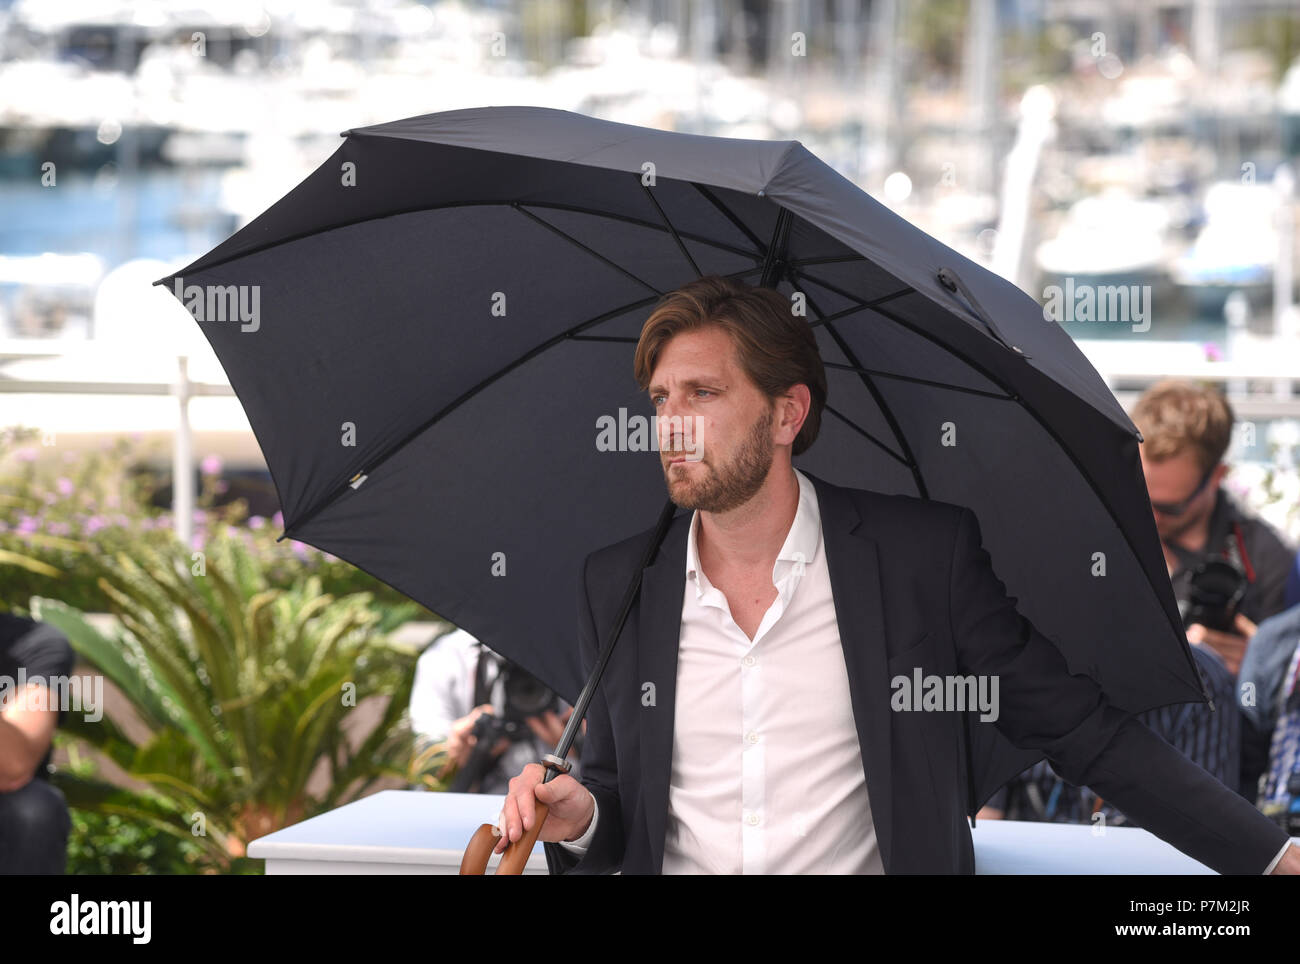 Mai 20, 2017 - Cannes, Frankreich: Ruben Ostlund nimmt am "Hauptplatz" fotoshooting während des 70. Filmfestival in Cannes. Ruben Ostlund lors du 70eme Festival de Cannes. *** Frankreich/KEINE VERKÄUFE IN DEN FRANZÖSISCHEN MEDIEN *** Stockfoto